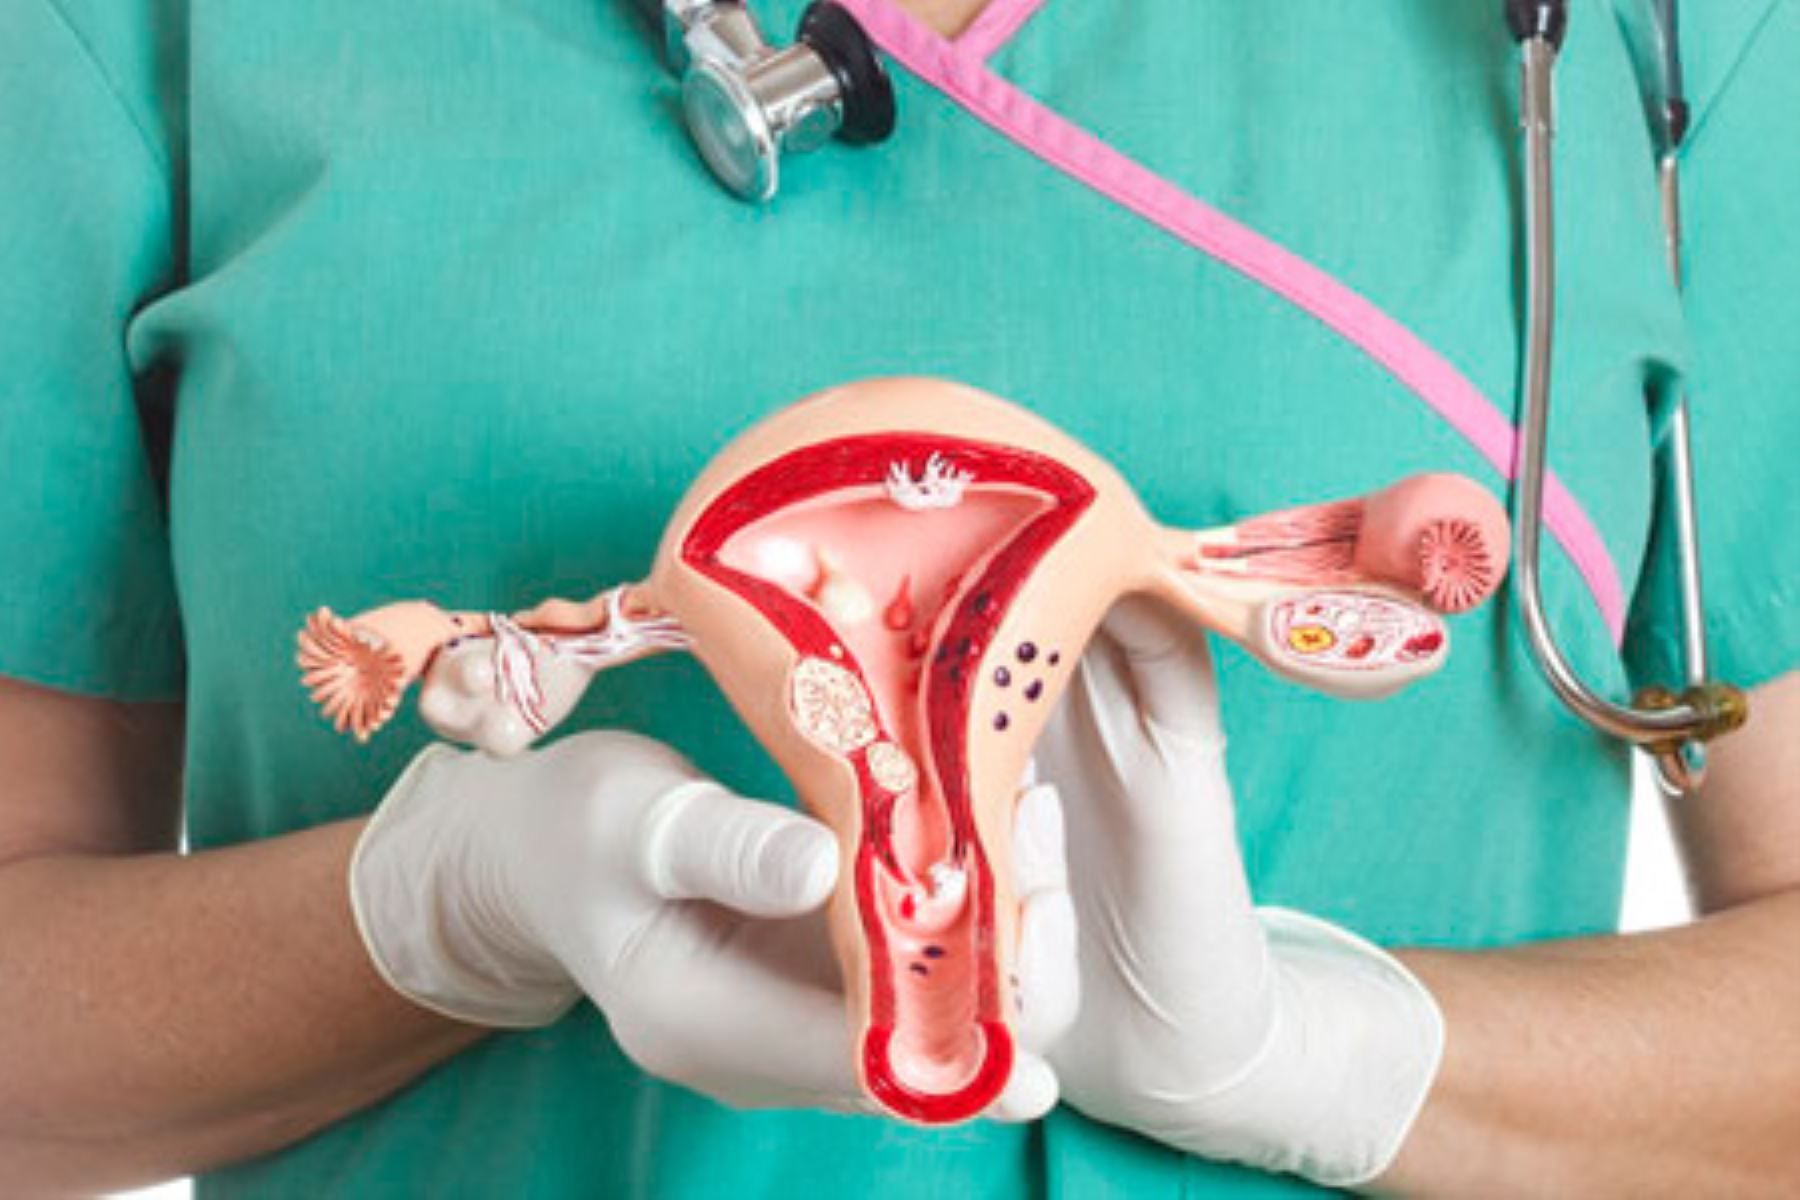 Los quistes hacen que la cáscara de los ovarios se haga más gruesa y que la mujer afectada tenga ciertas características andróginas o masculinizadas. Foto: Cortesía.